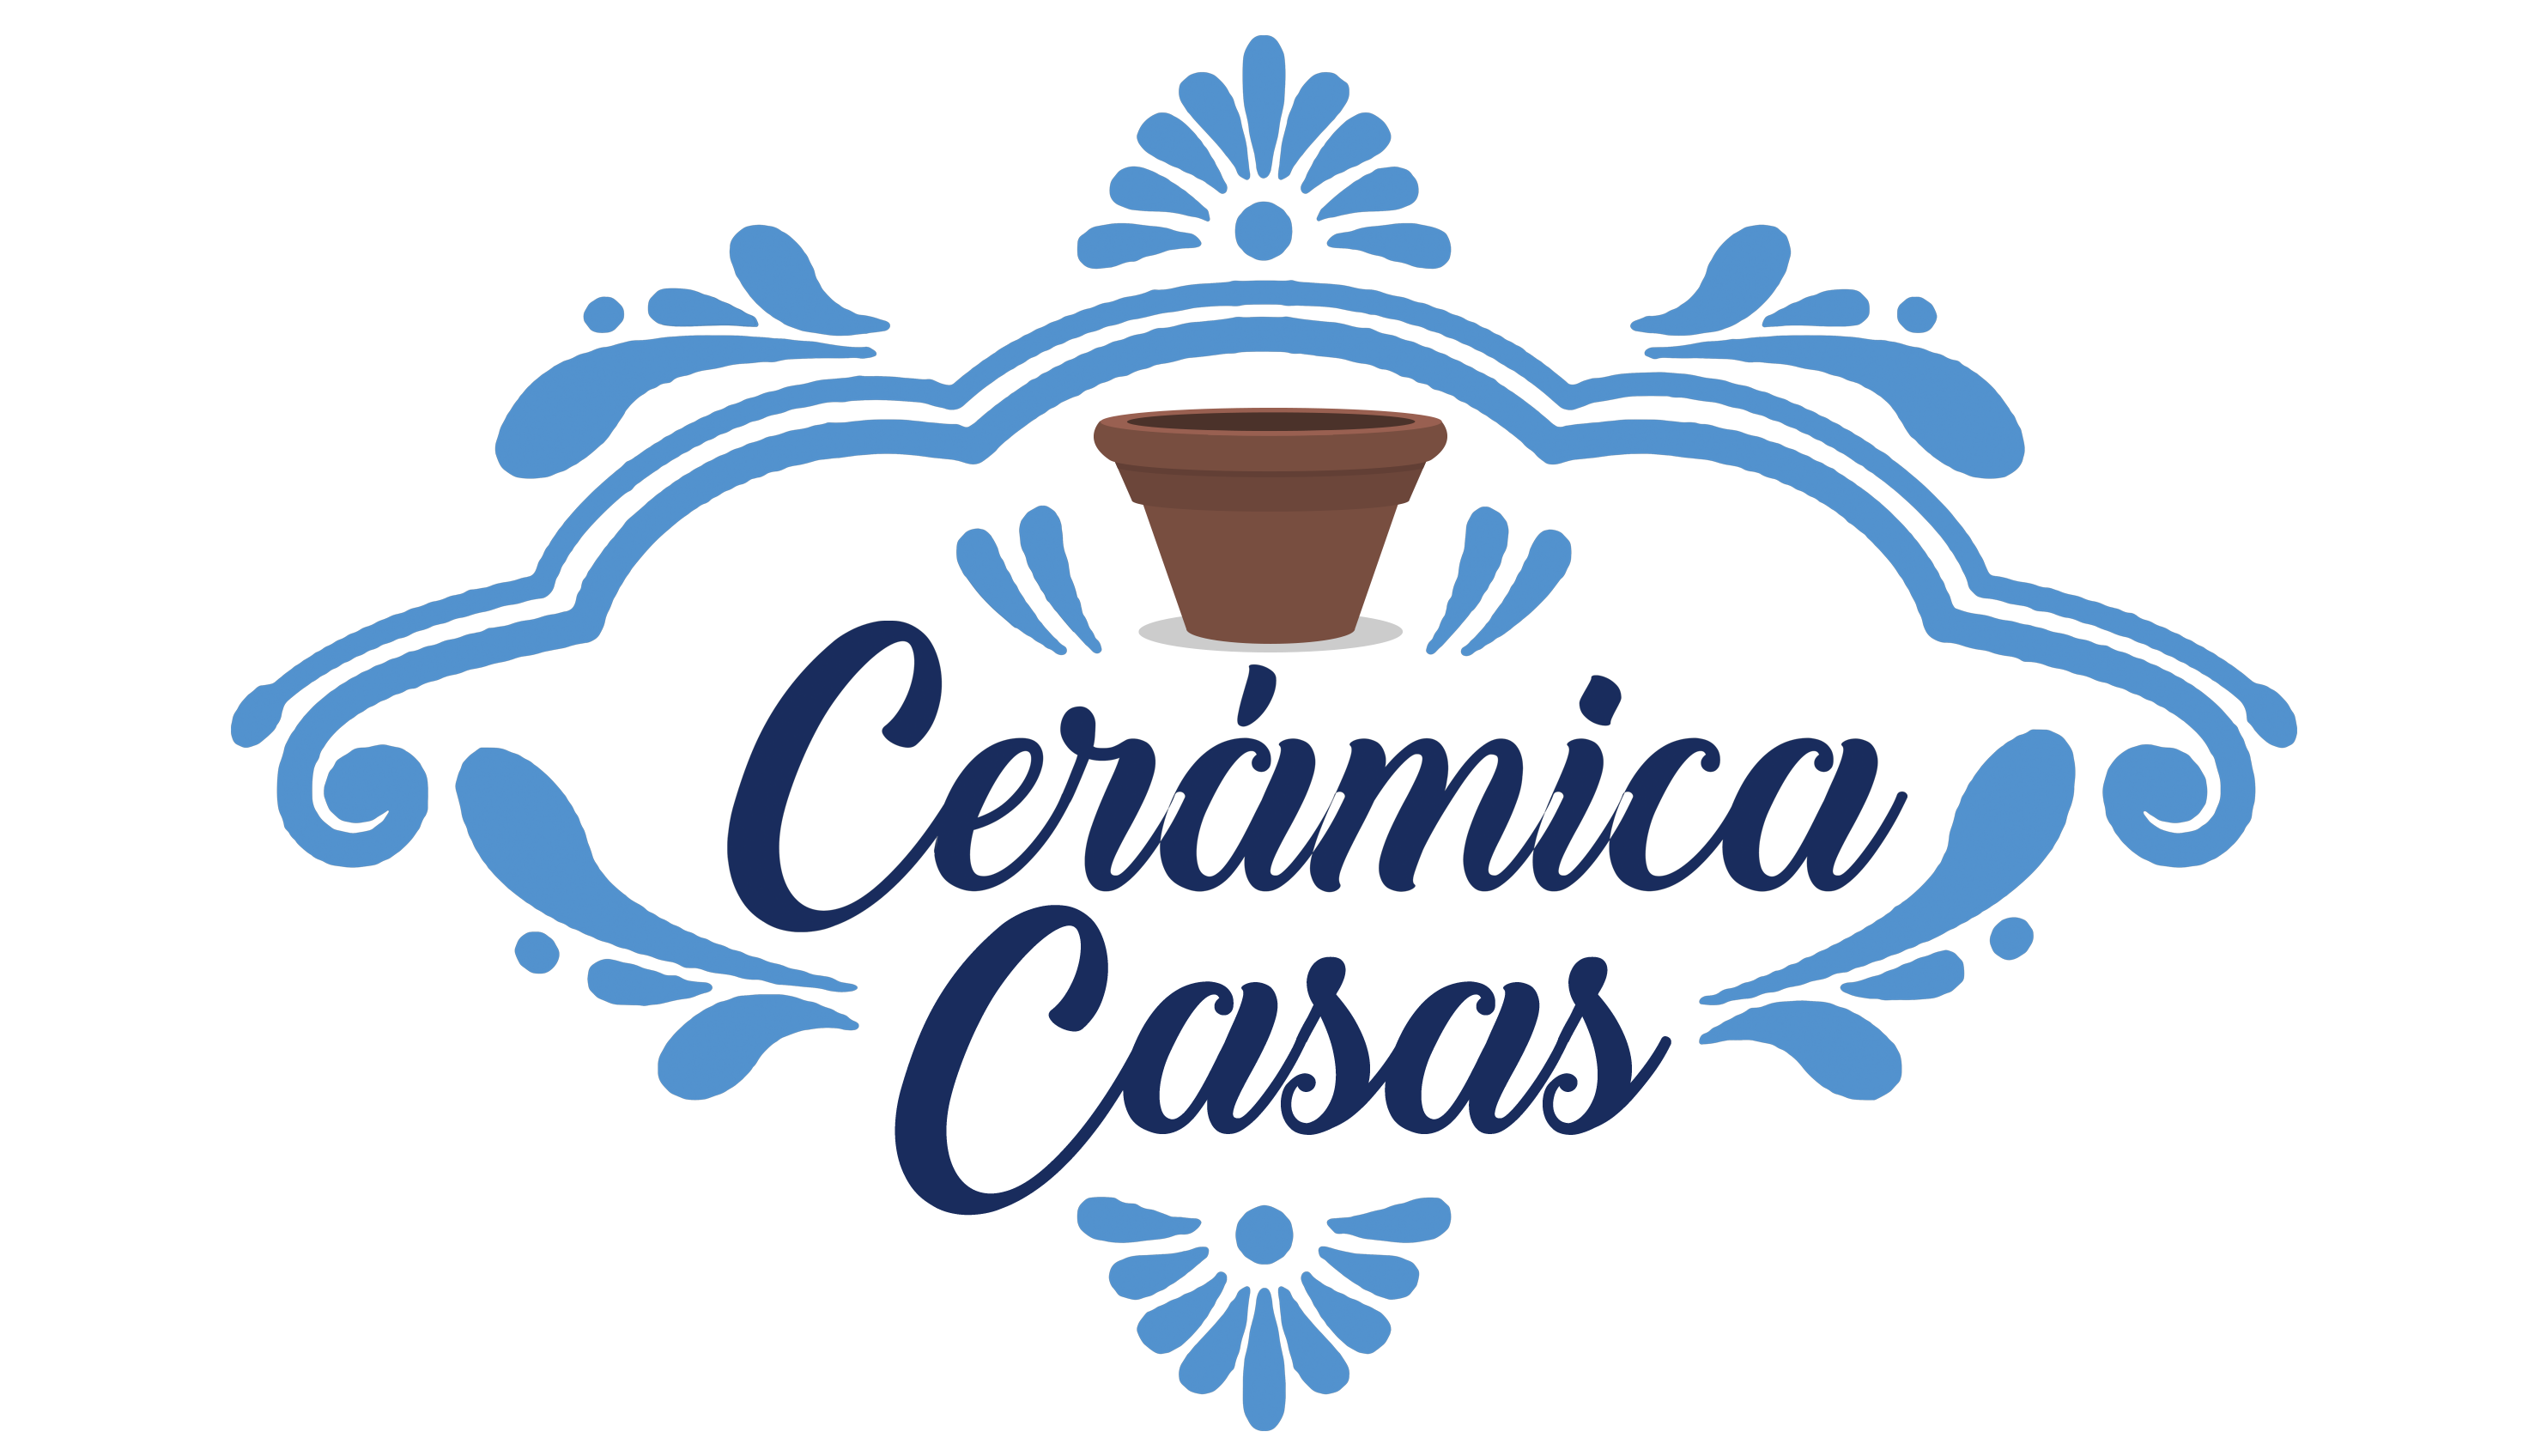 logo Cerámica Casas